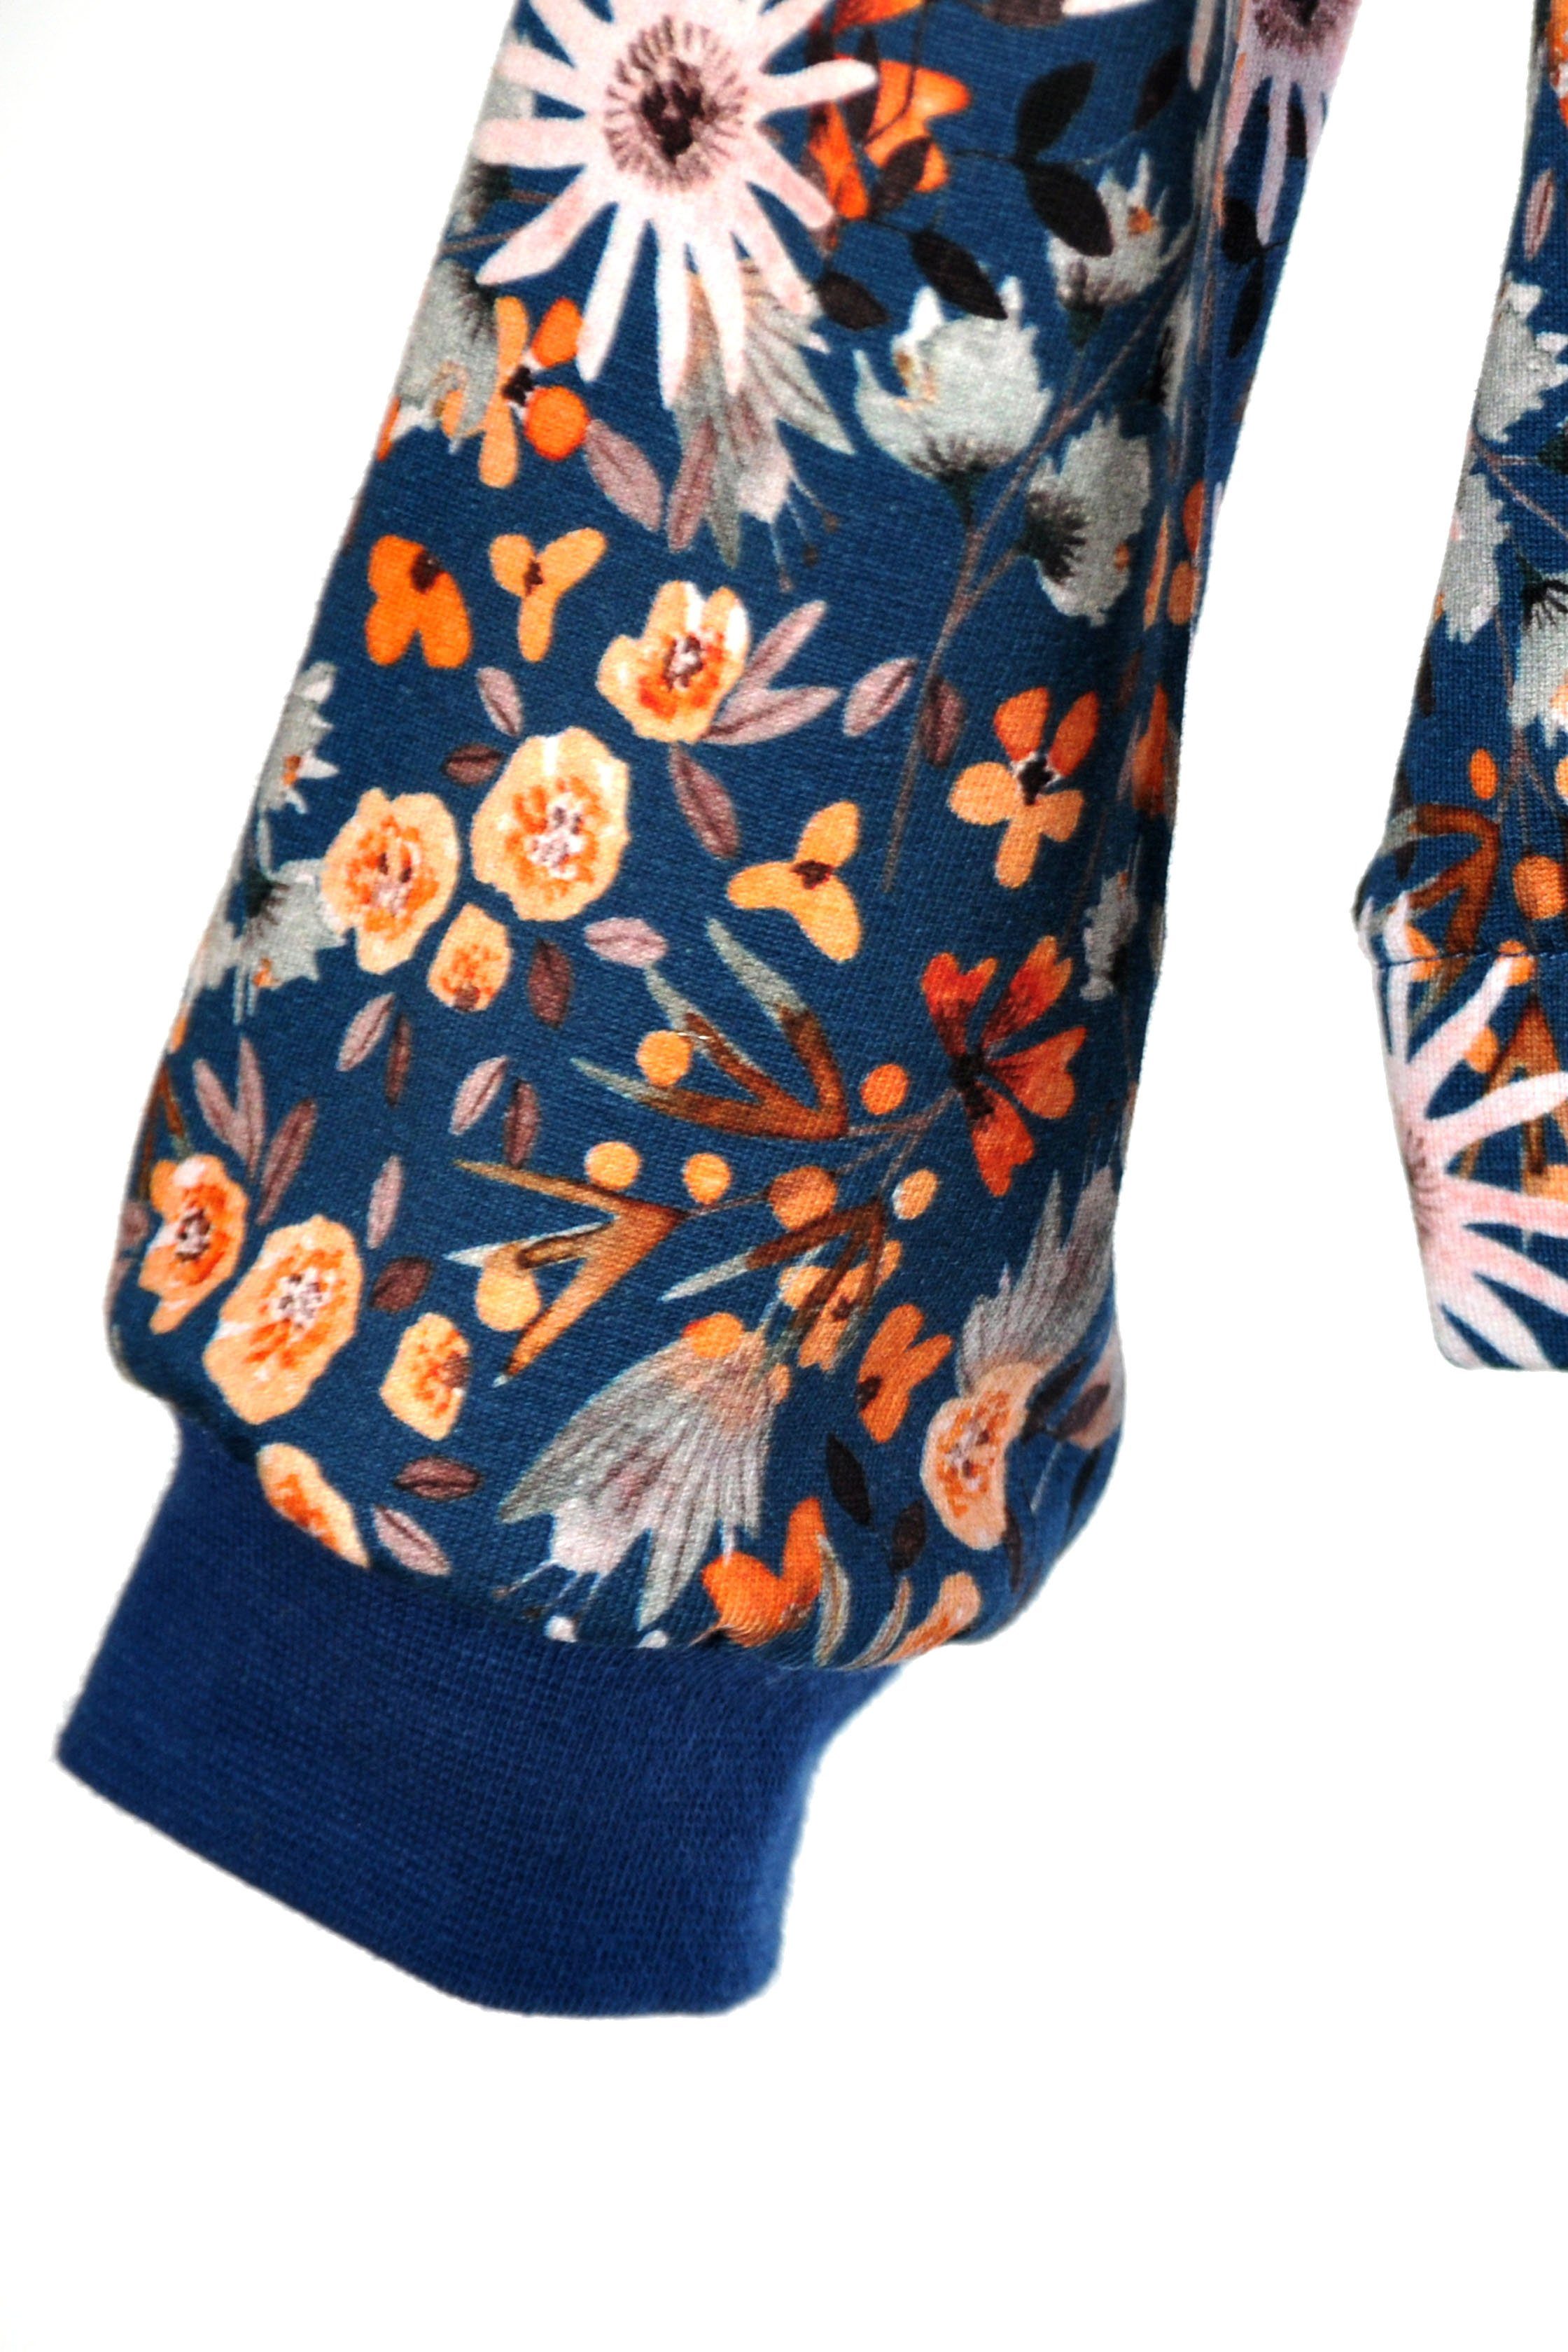 coolismo Sweatshirt Sweater blau mit für Motivdruck europäische Blumen Baumwolle, Mädchen Produktion